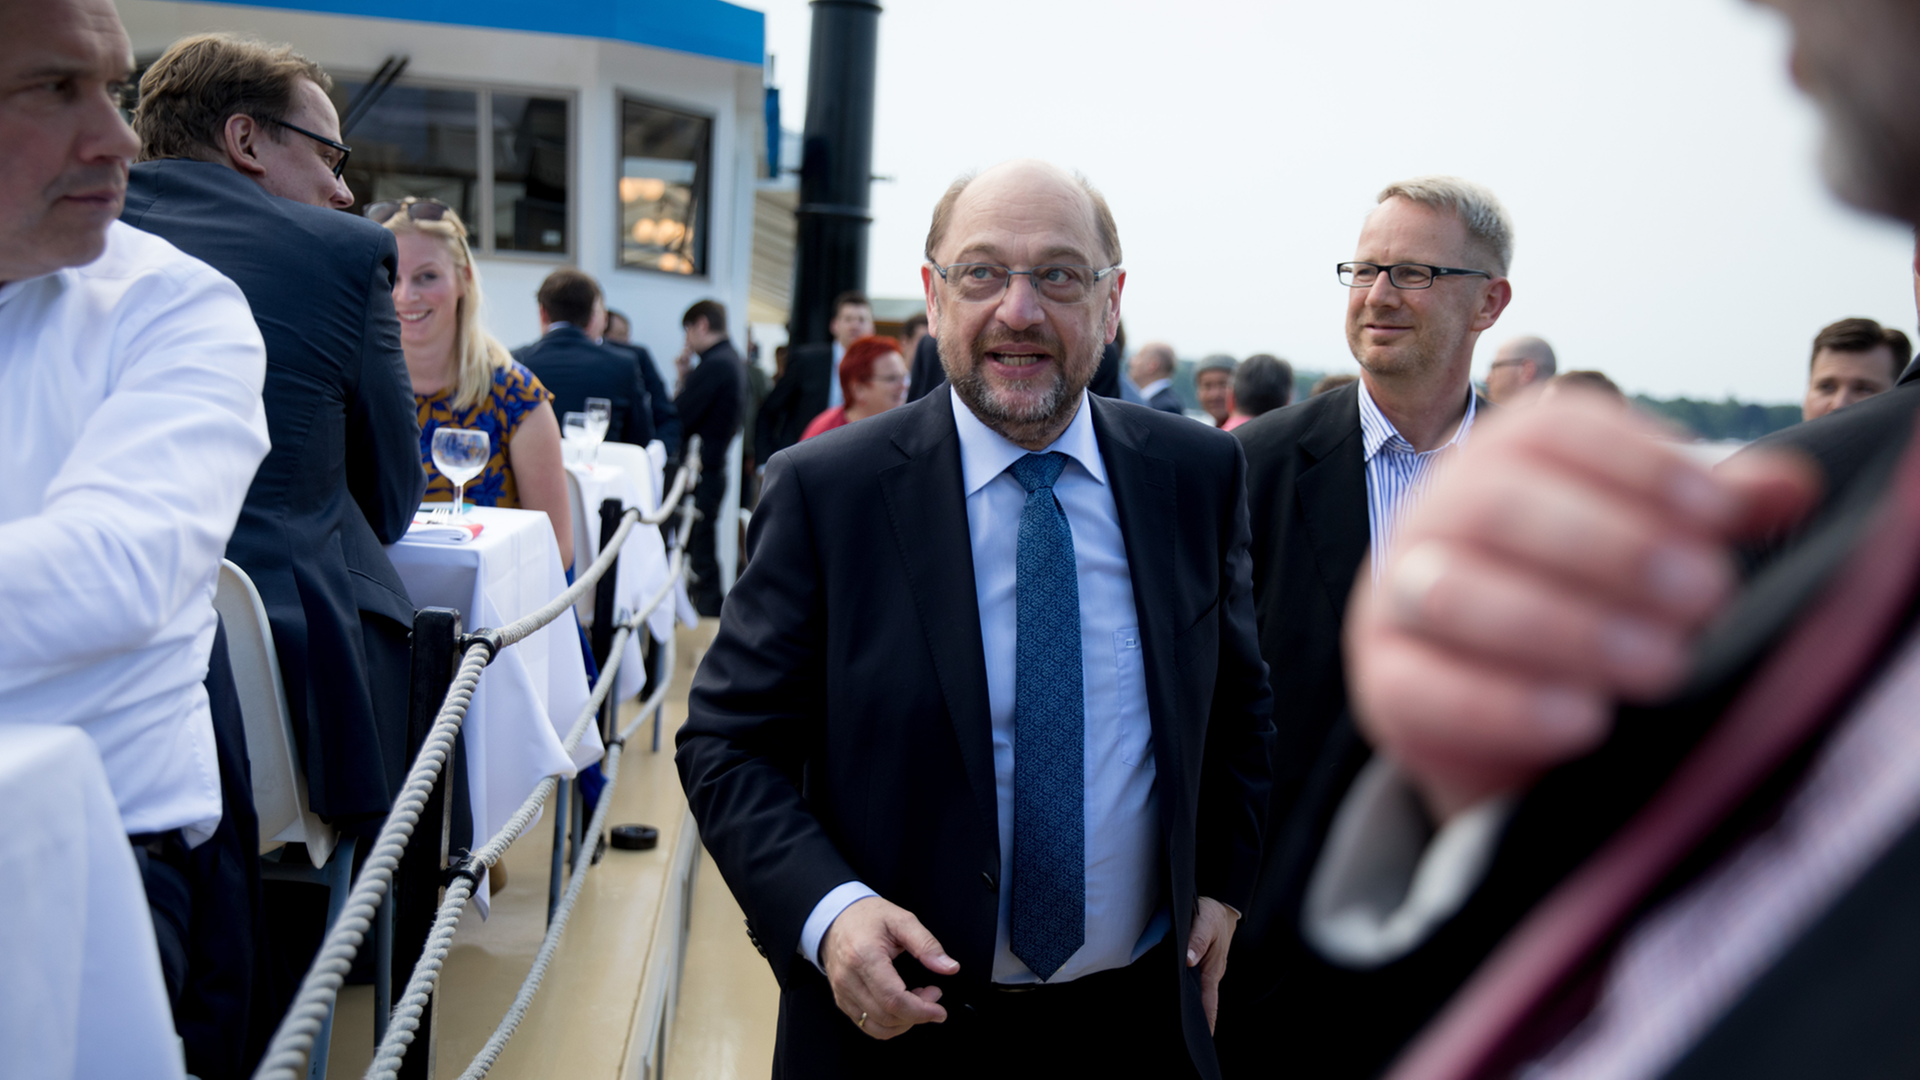 Der SPD-Kanzlerkandidat und Parteivorsitzende, Martin Schulz, bei der traditionellen SPD-Spargelfahrt des konservativen Parteiflügels Seeheimer Kreis auf dem Wannsee